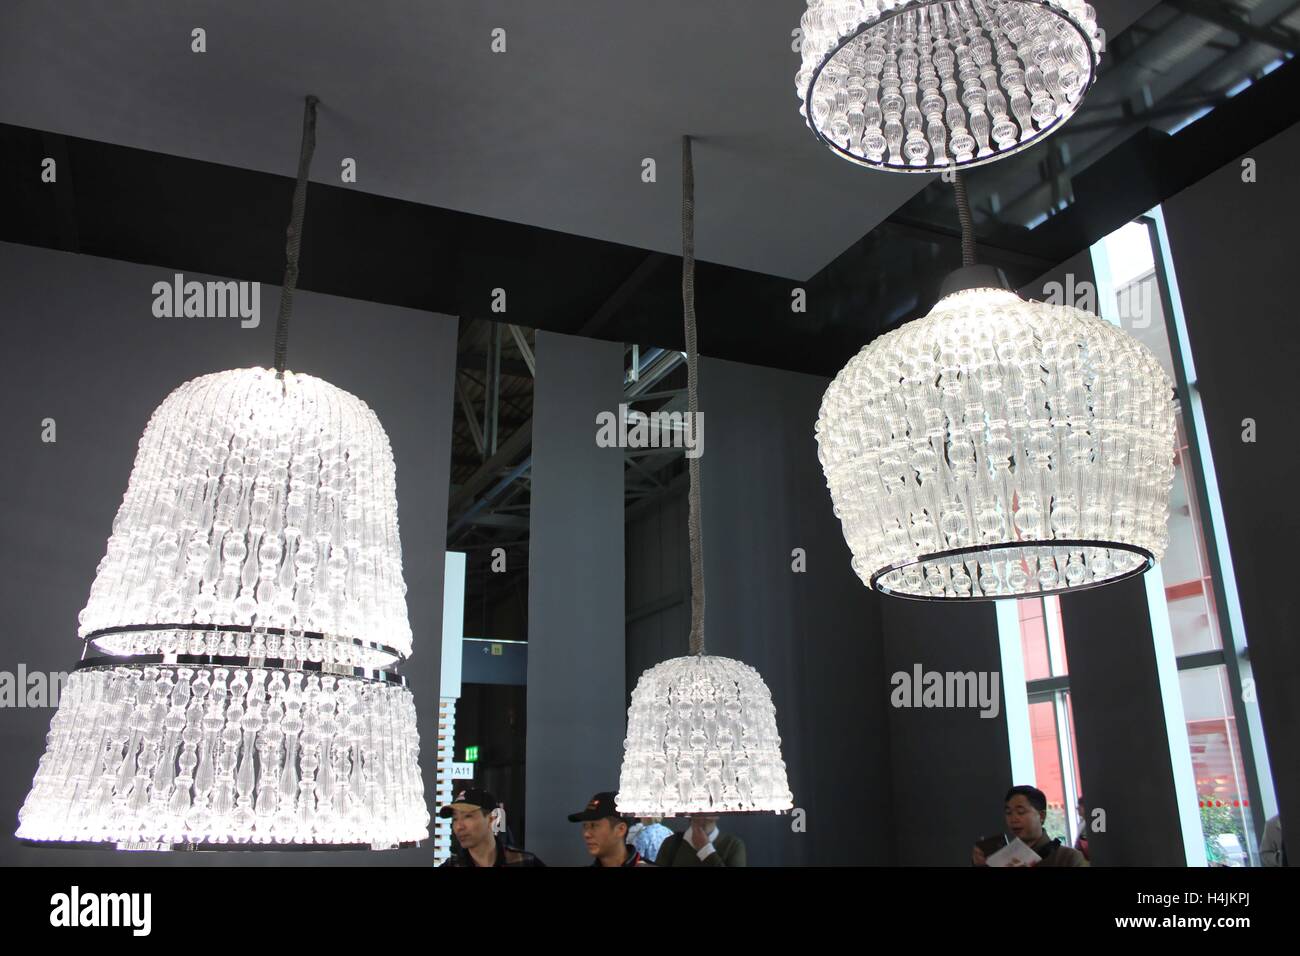 MILAN, ITALIE - 15 avril 2015 : luxe colletion de lustre en verre soufflé  avec des gens autour, au cours de la Semaine du Design de Milan Photo Stock  - Alamy